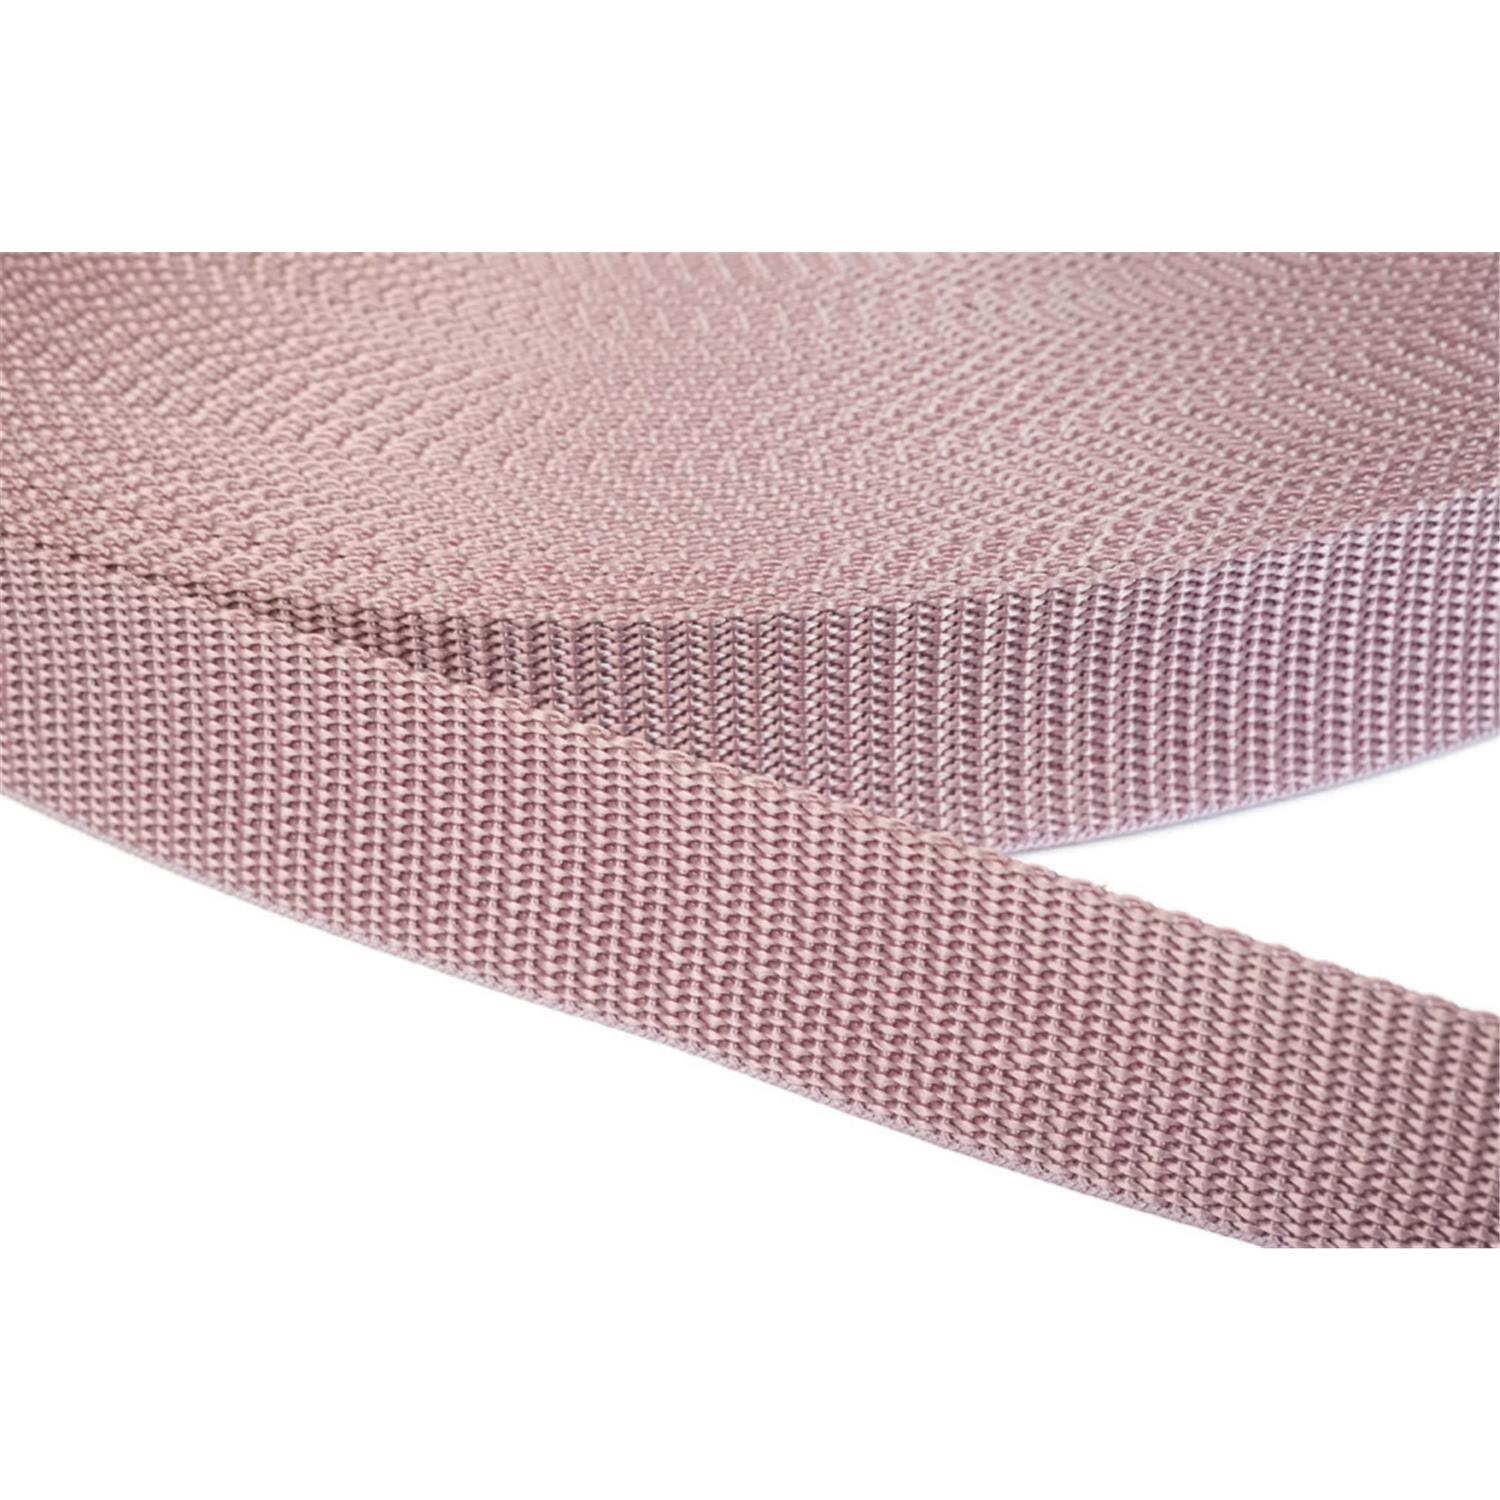 Gurtband 25mm breit aus Polypropylen in 41 Farben 15 - altrosa 50 Meter